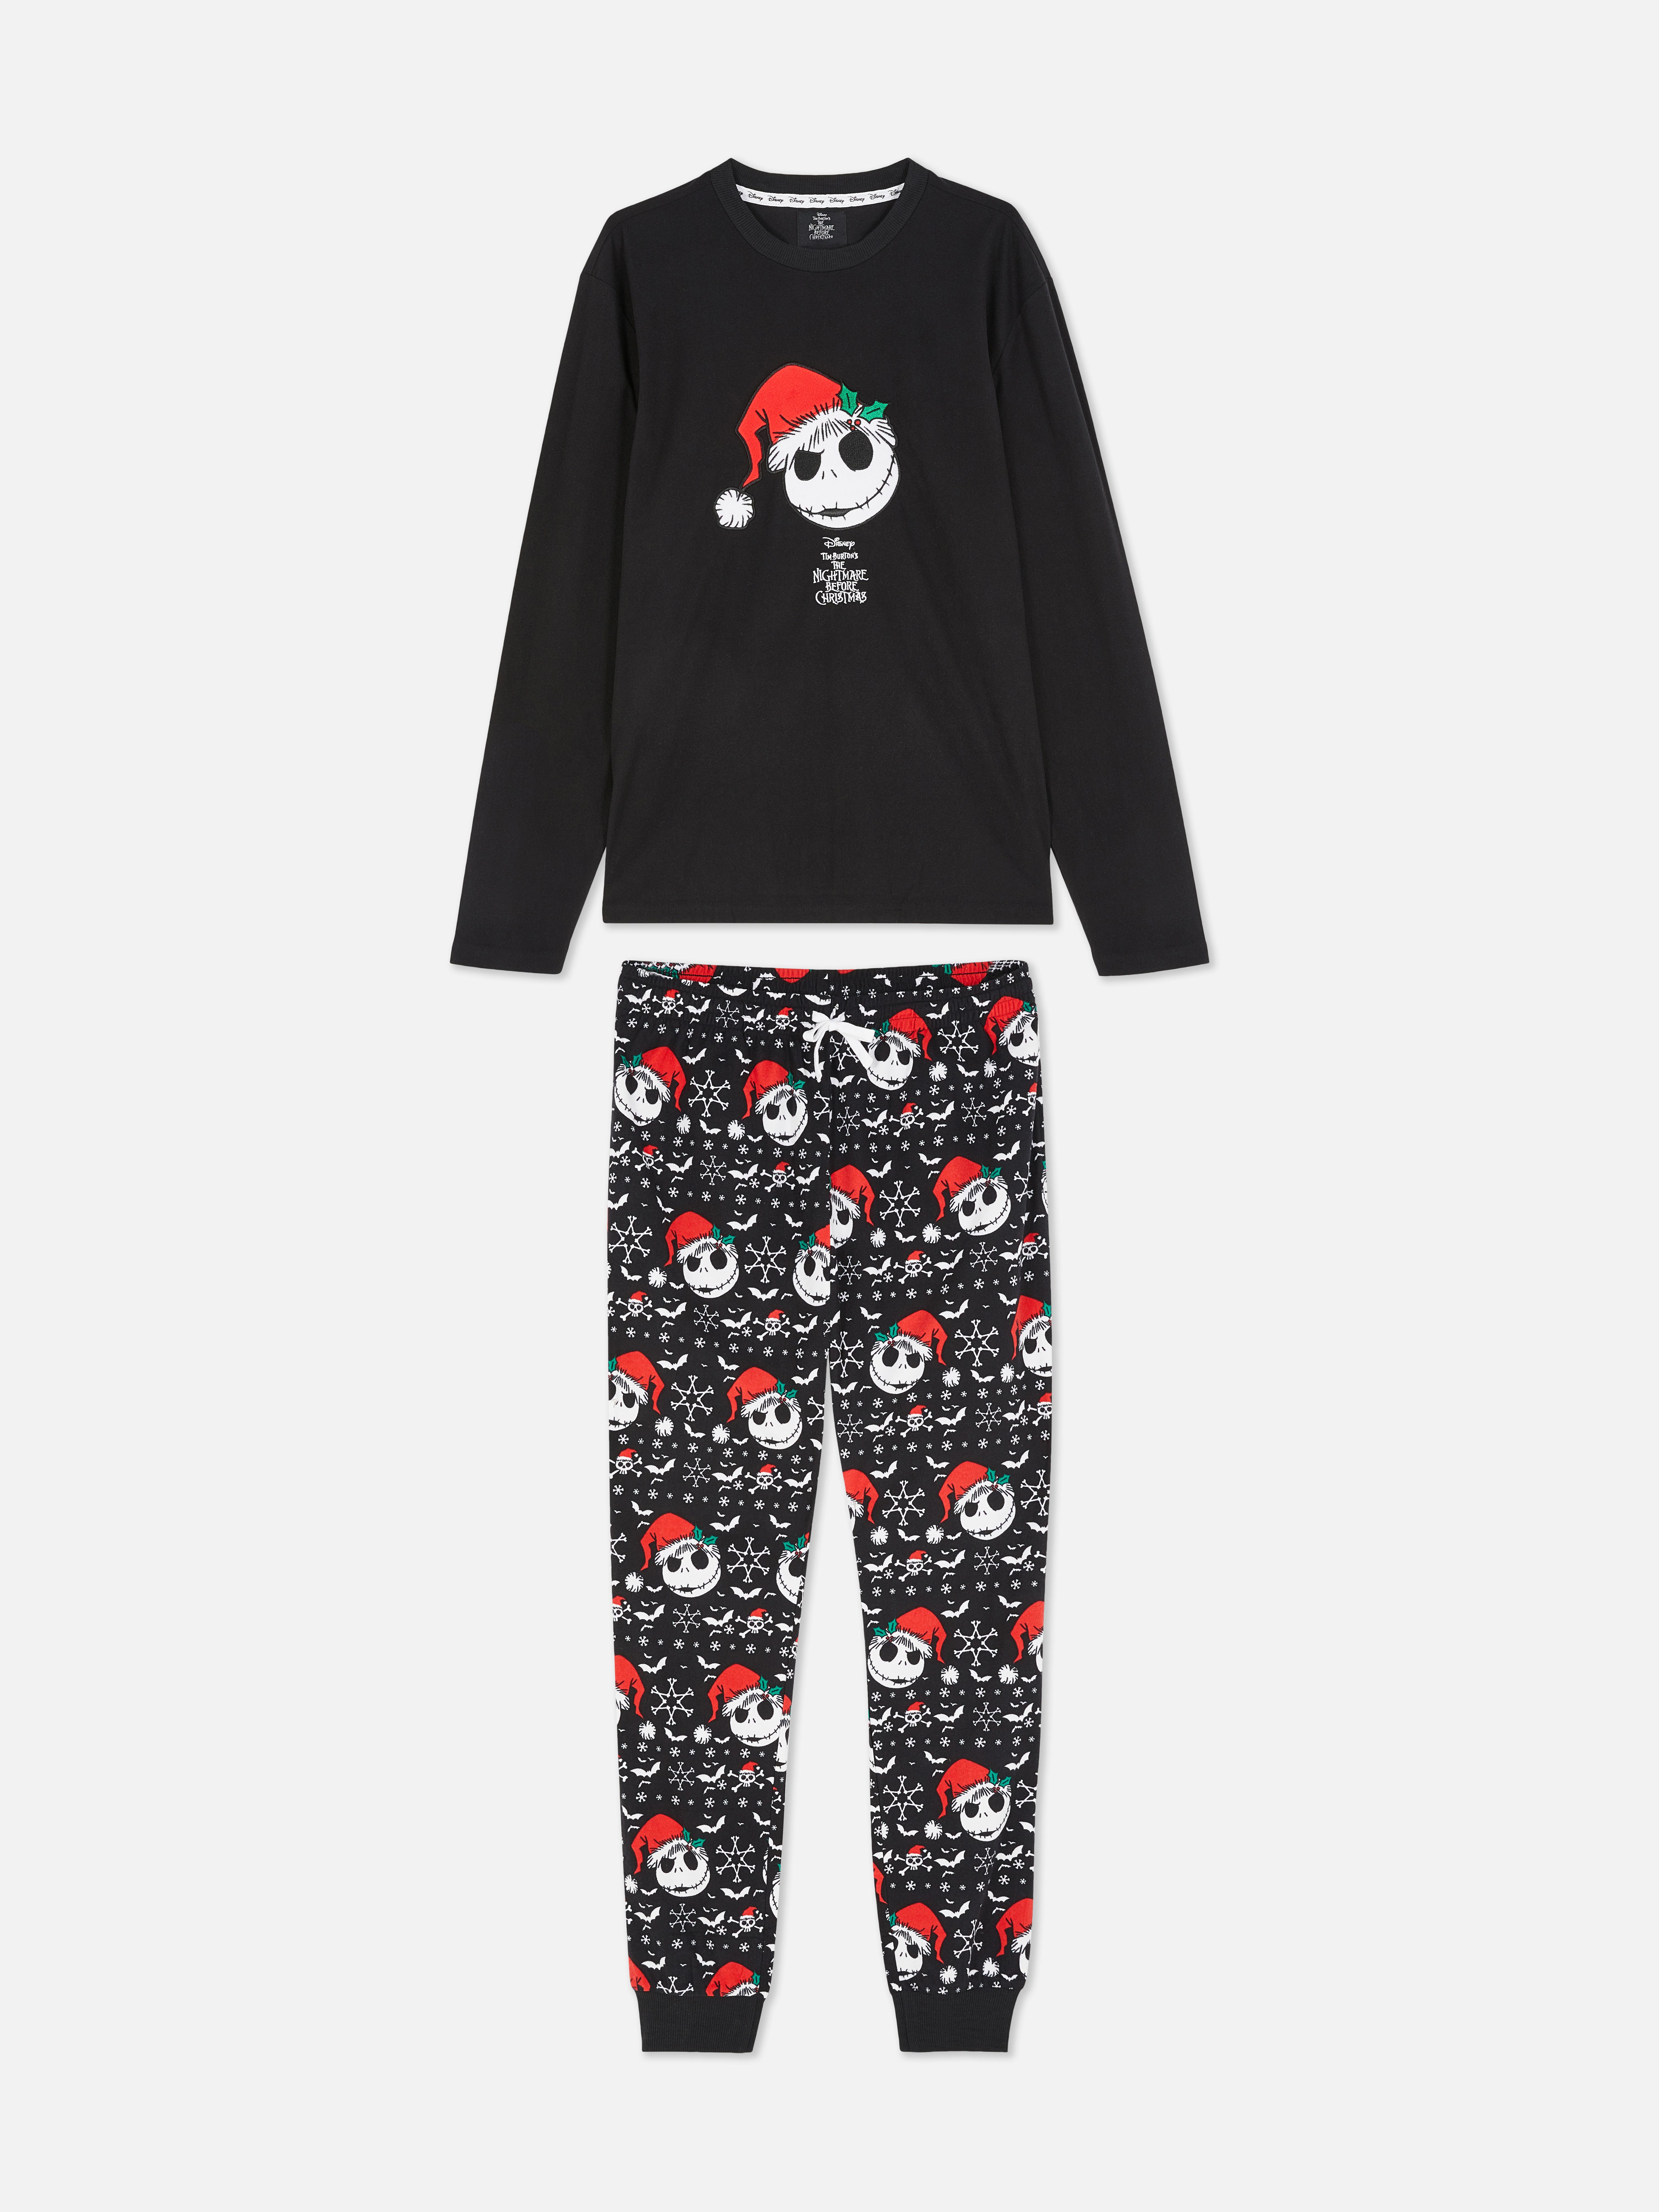 Disney Tim Burton’s The Nightmare Before Christmas Long Sleeve Pajamas